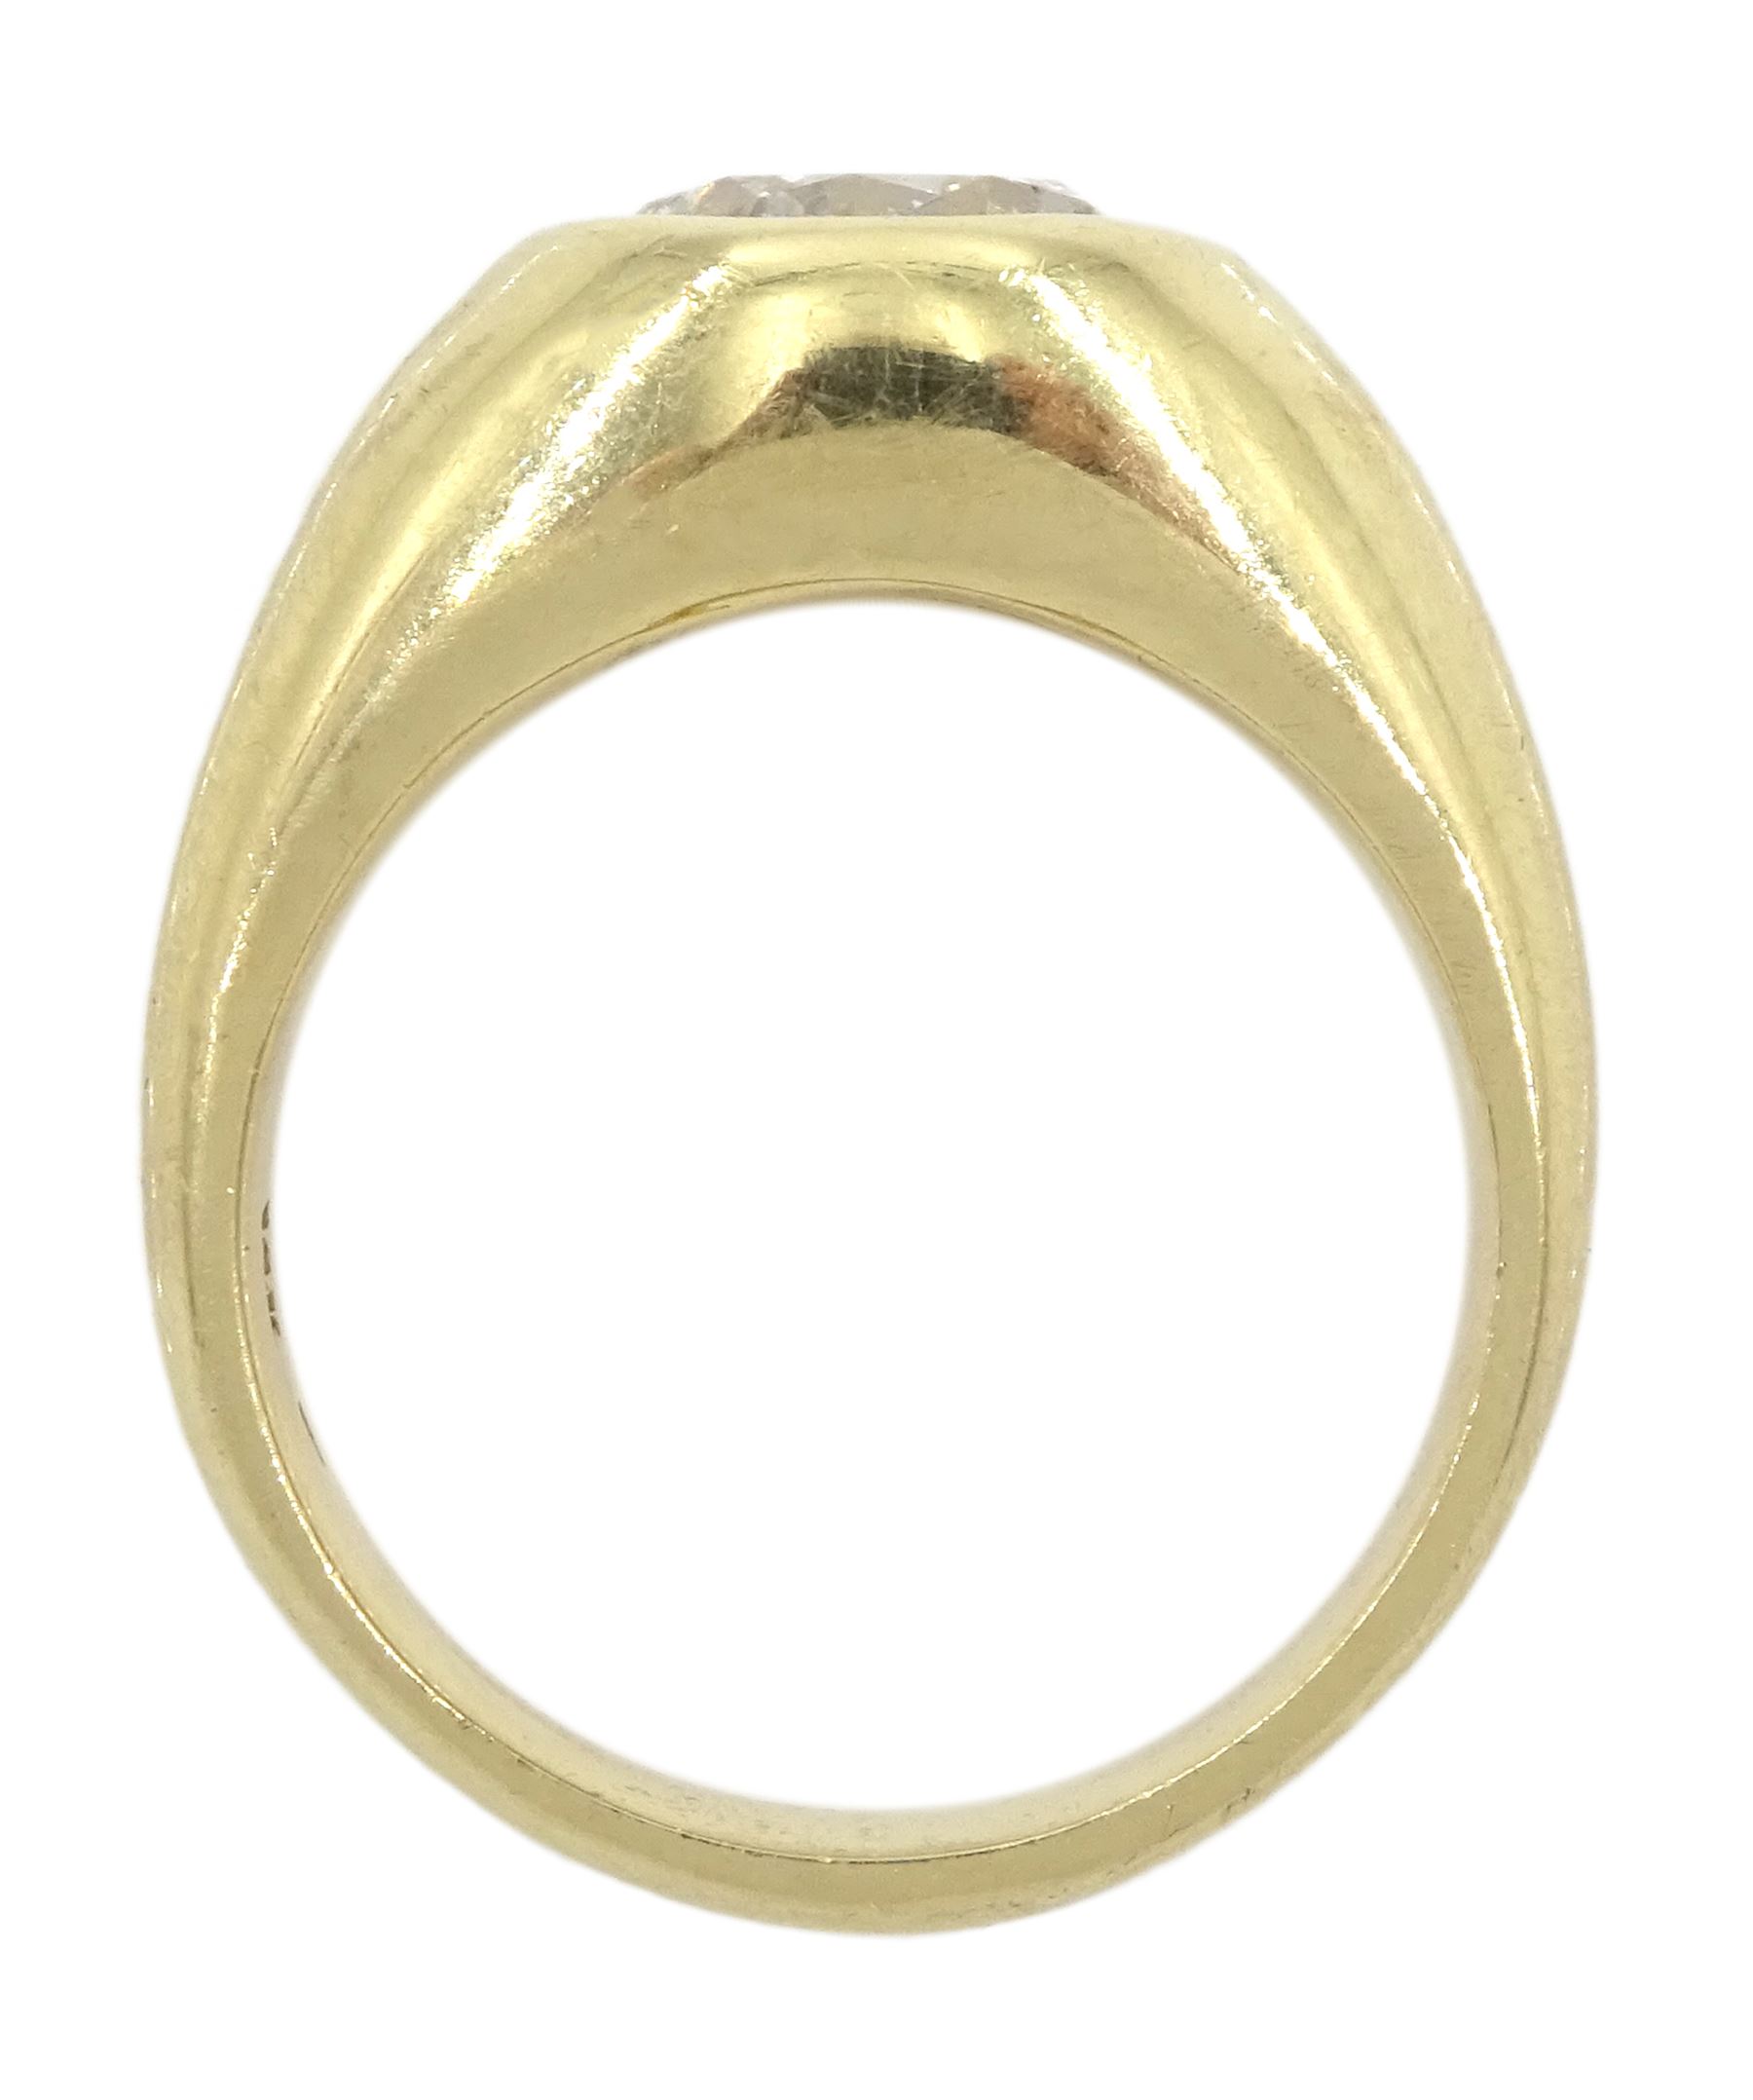 Gold single stone bezel set round brilliant cut diamond ring - Image 4 of 6